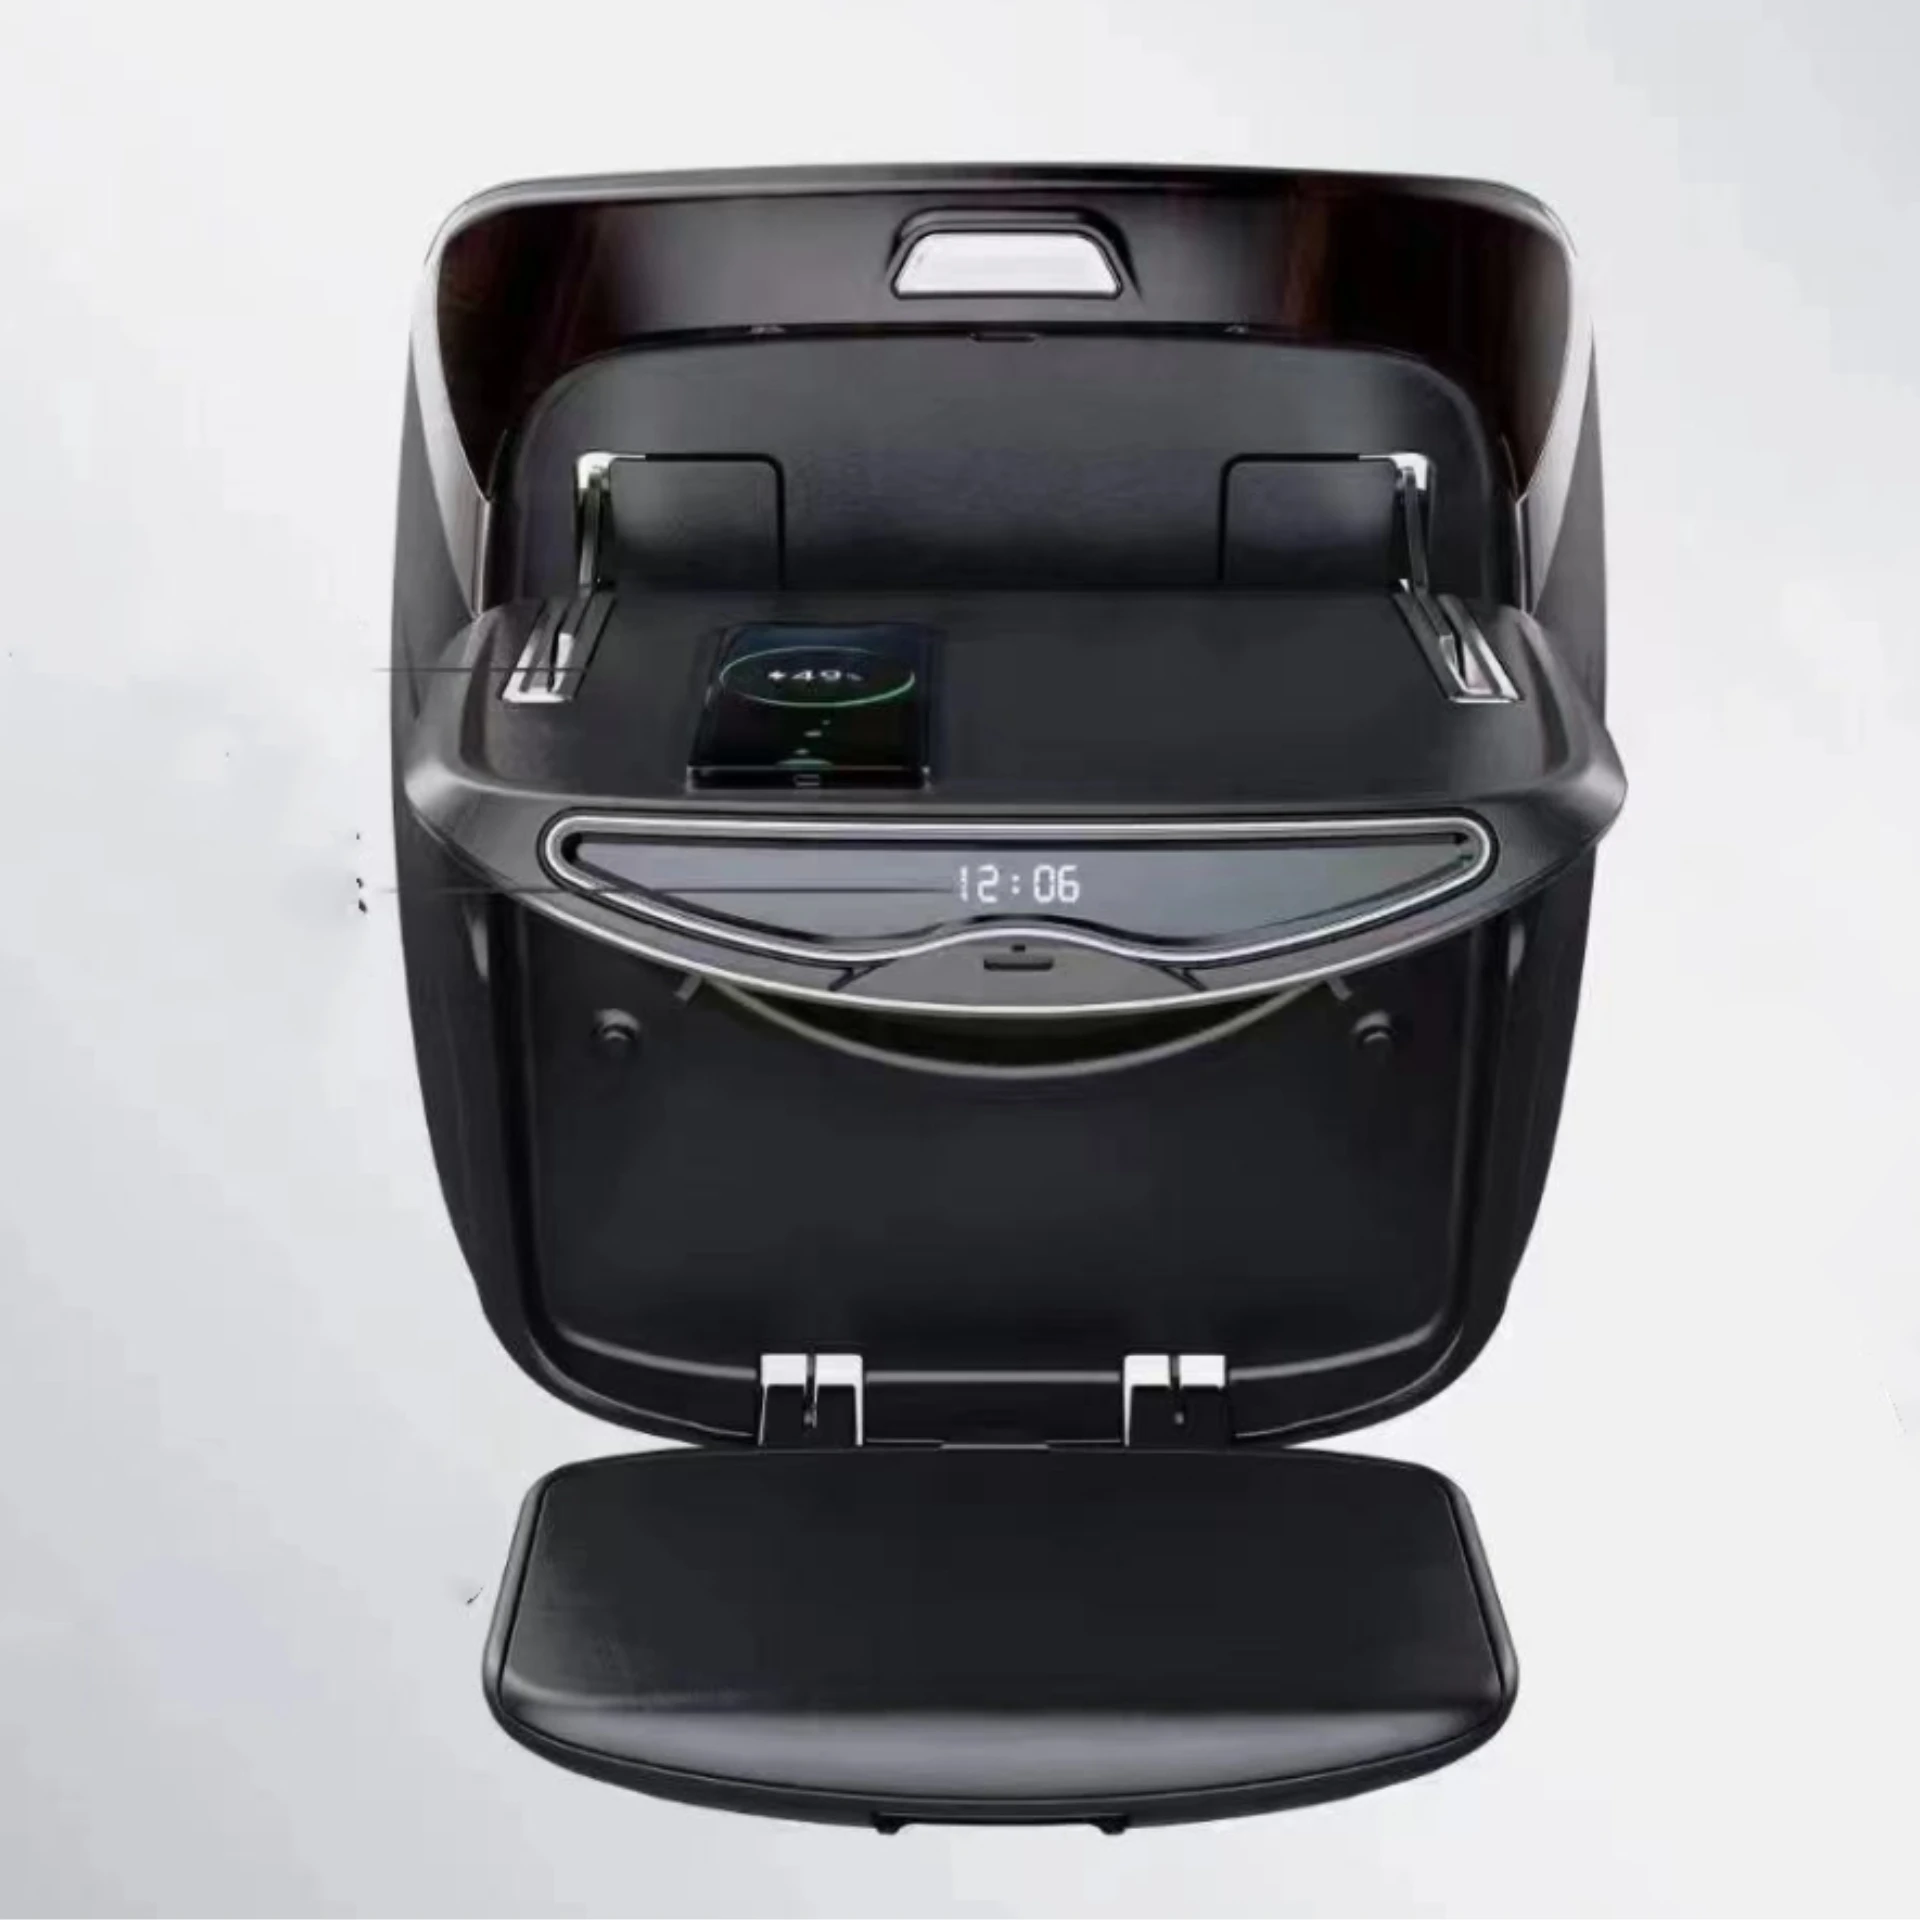 Доска для стола со спинкой сиденья Toyota Alphard Crown Vellfire, лоток для упаковки с подставкой для ног, автомобильные аксессуары